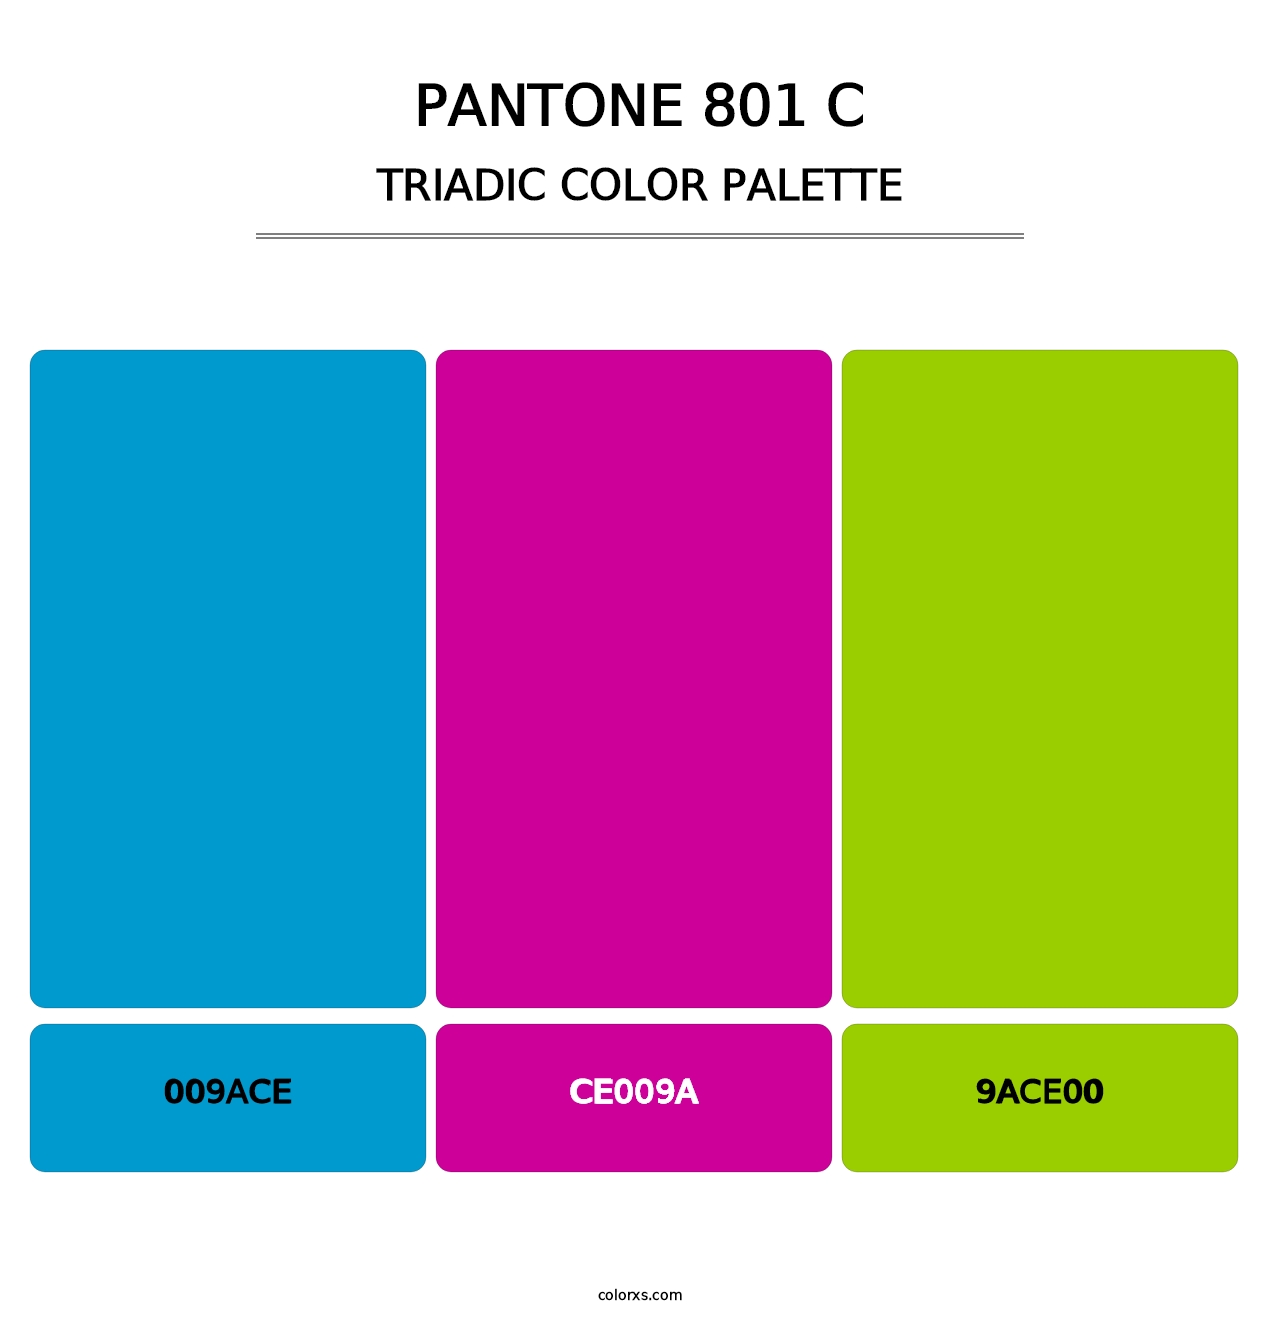 PANTONE 801 C - Triadic Color Palette